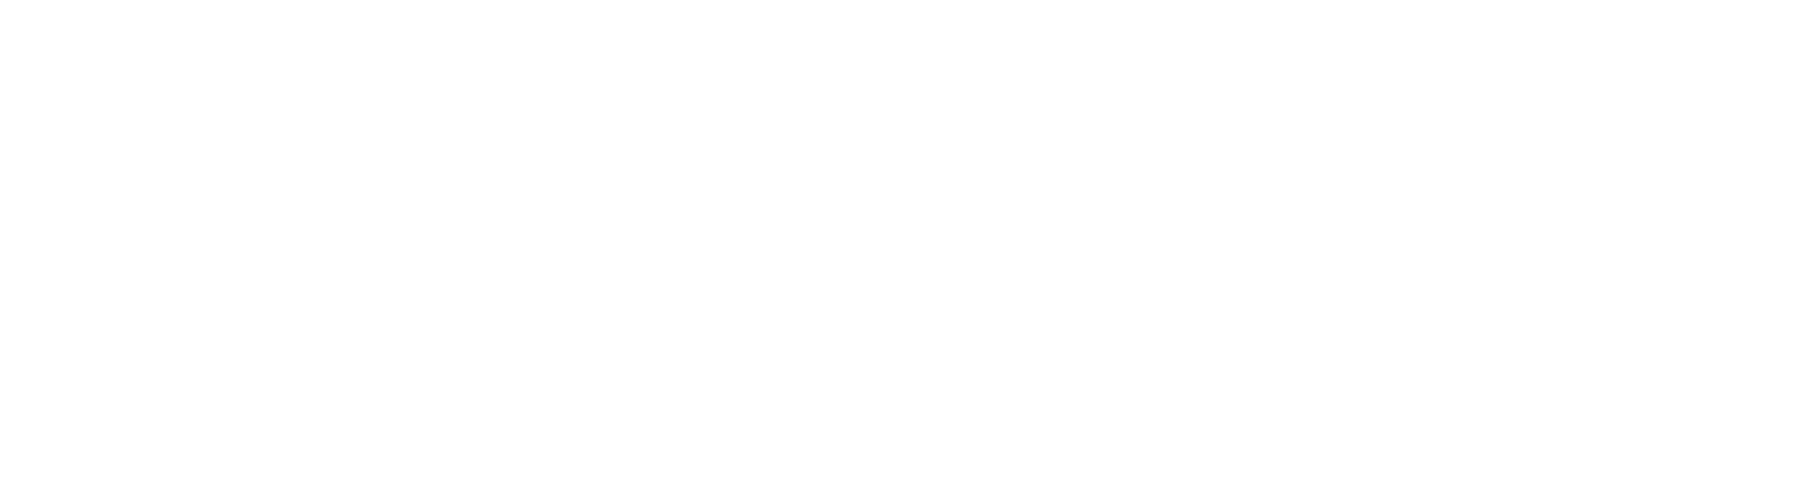 MegaStitch.eu